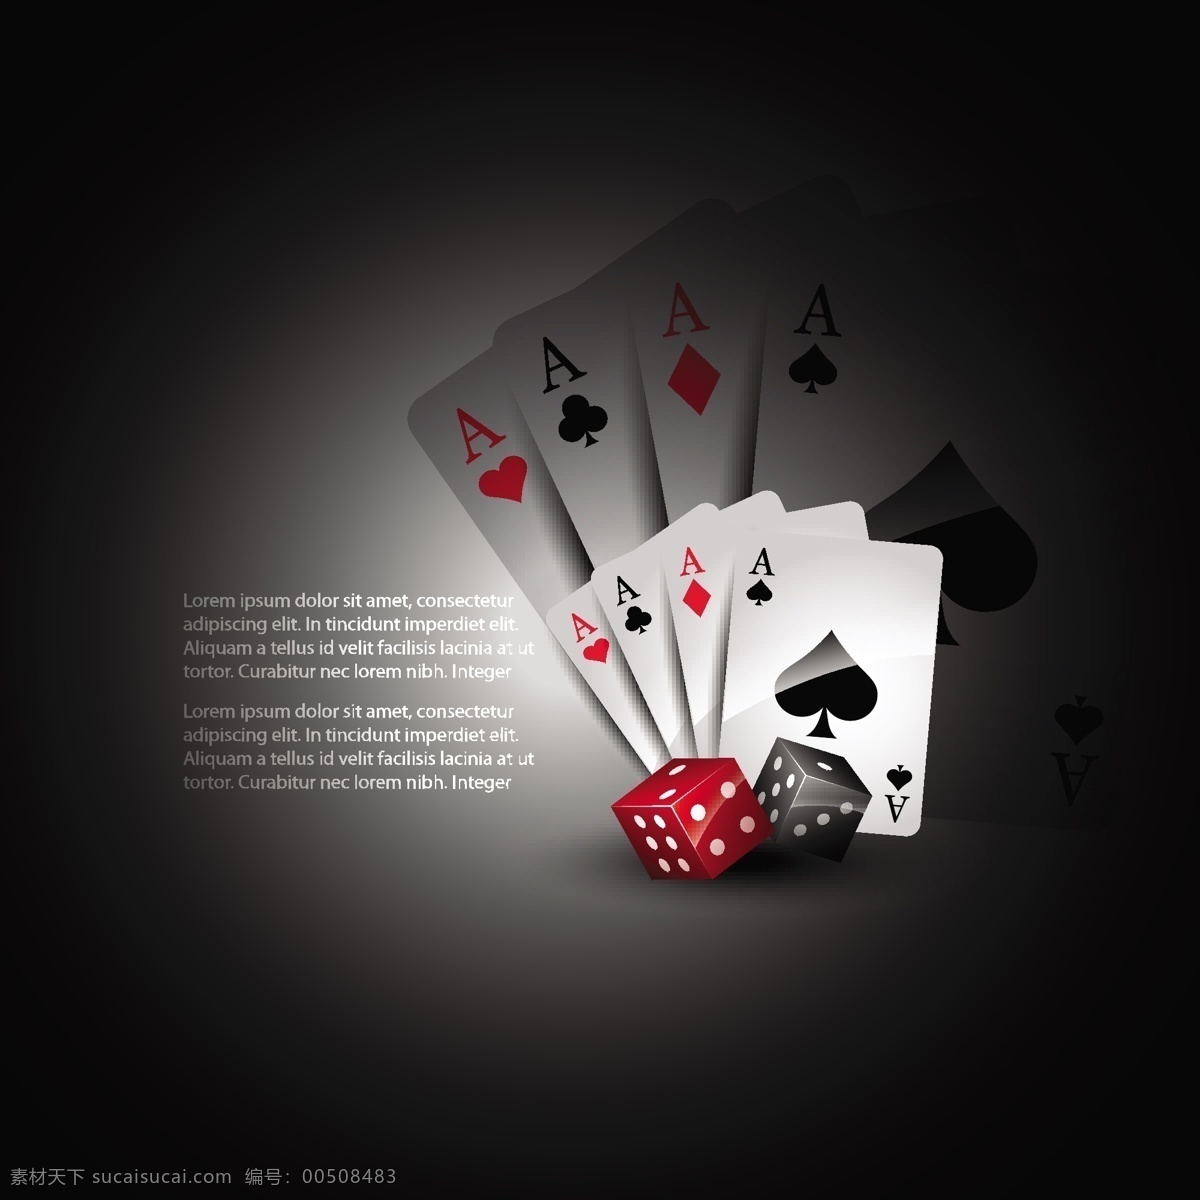 卡 矢量图形 骰子 玩 玩纸牌 卡的骰子 矢量打牌骰子 扑克骰子 扑克骰子自由 纸牌 向量 扑克牌 骰子玩纸牌 游戏 其他矢量图